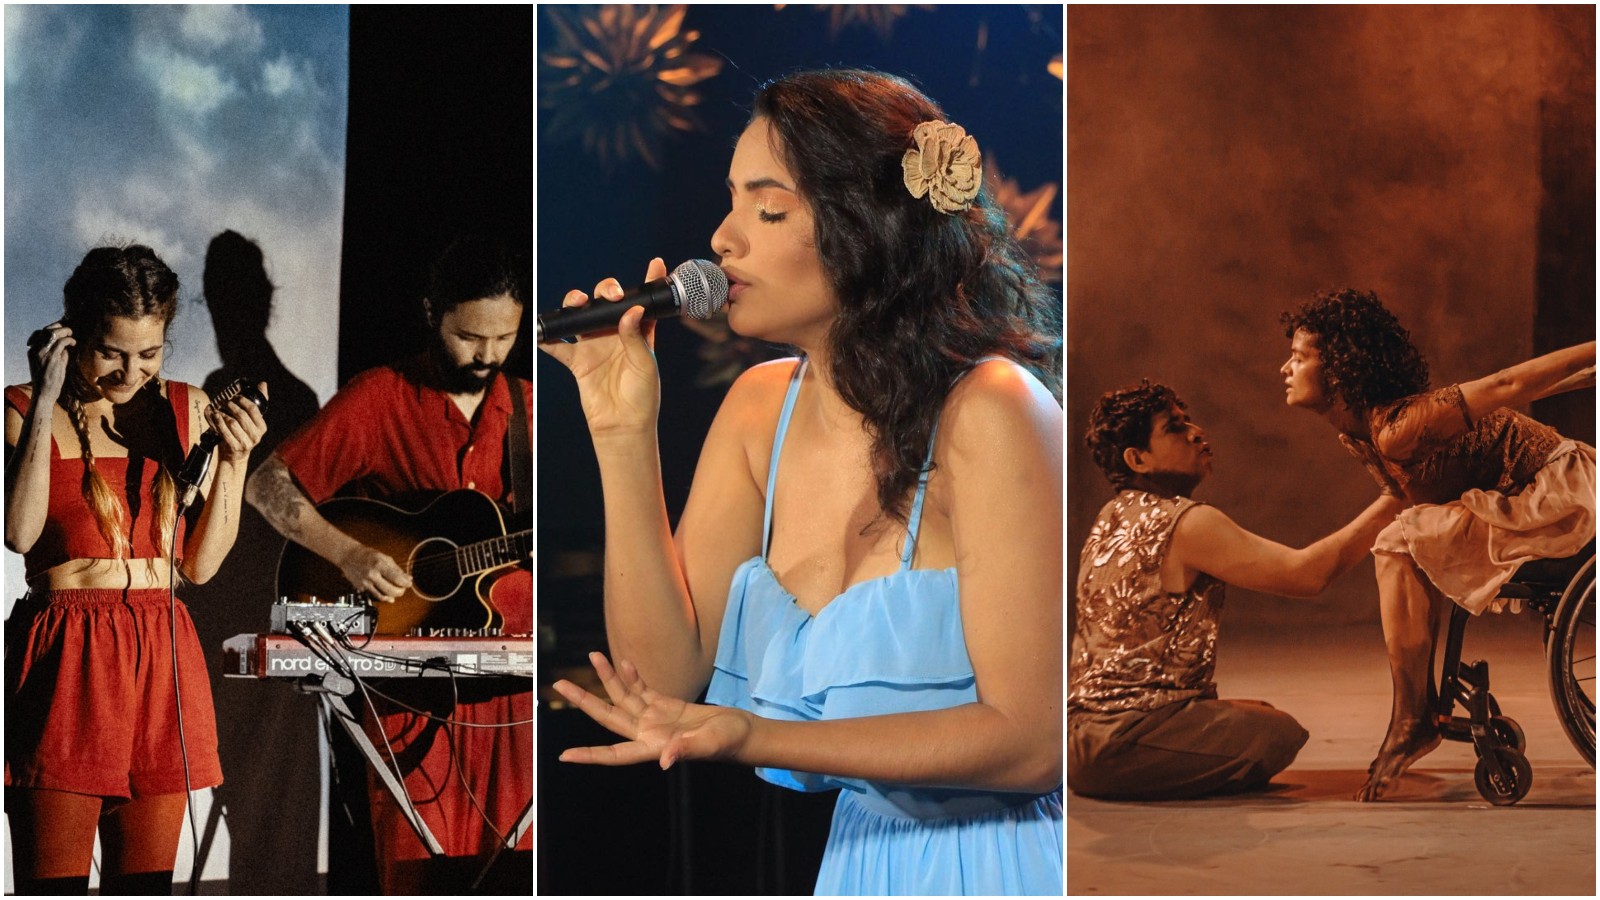 Música ao vivo, exposições e atividades artísticas: confira a programação cultural do fim de semana do Dia das Mães em Fortaleza